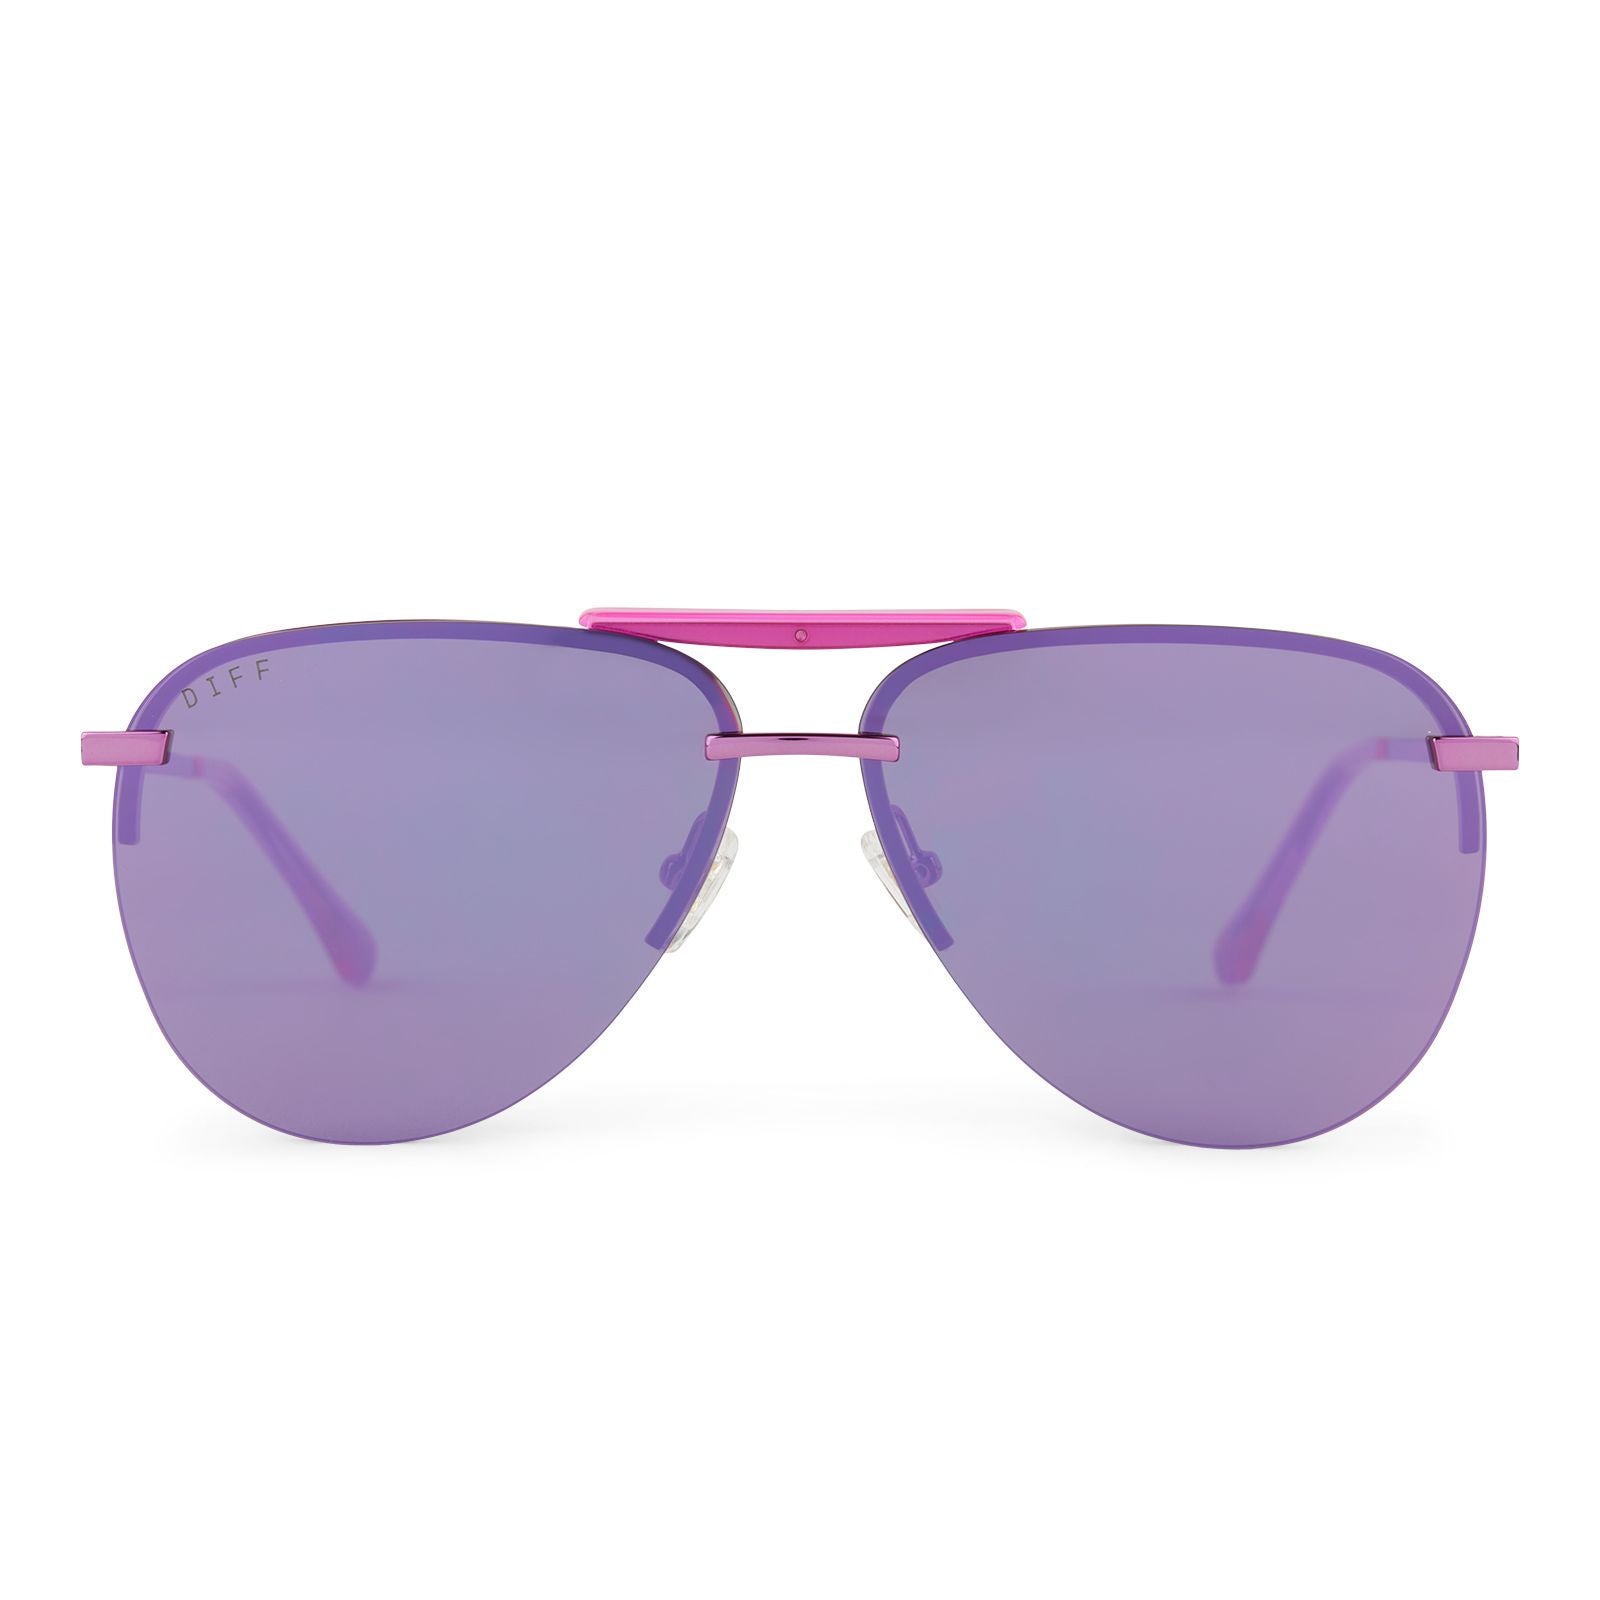 DIFF | Tahoe - Pink Rush Mirror Sunglasses